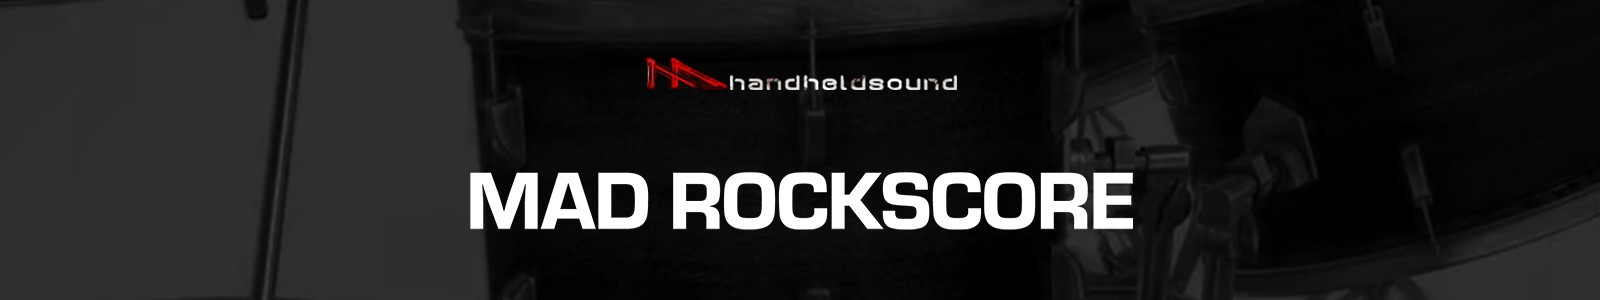 MAD Rockscore by Handheld Sound